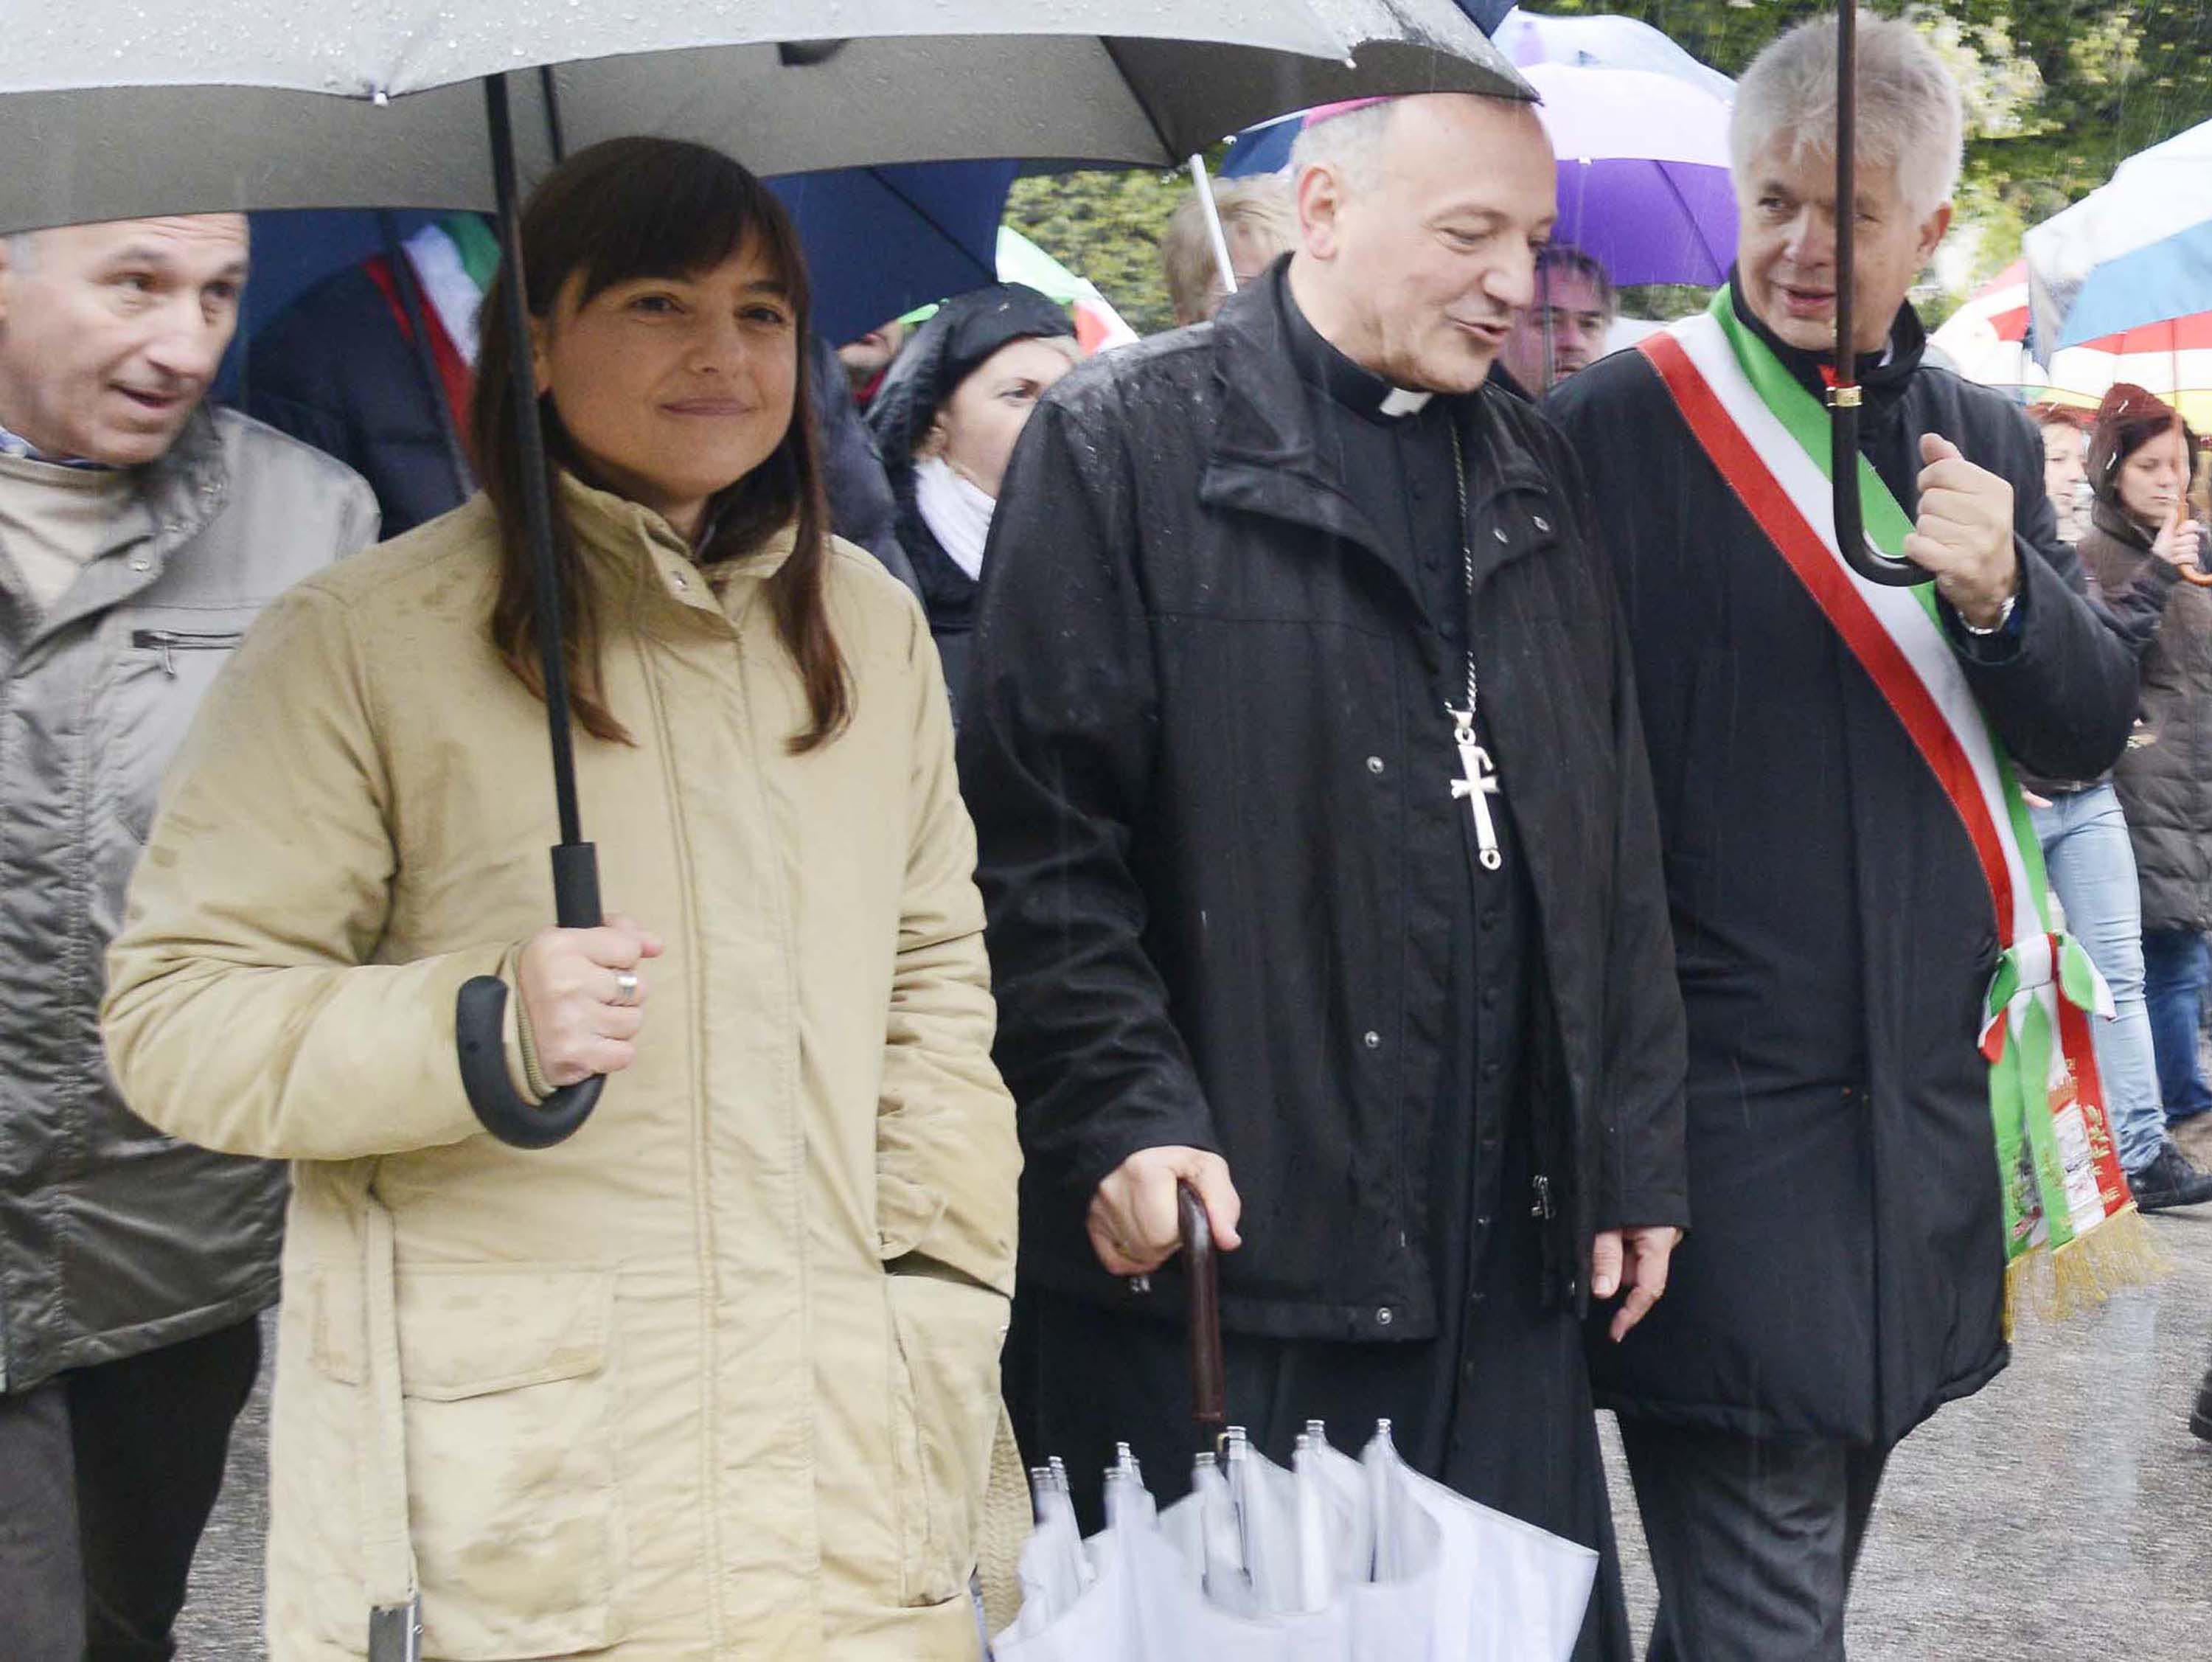 Debora Serracchiani (Presidente Friuli Venezia Giulia), Giuseppe Pellegrini (Vescovo Pordenone) e Claudio Pedrotti (Sindaco Pordenone) alla manifestazione indetta in occasione dello sciopero generale. (Pordenone 15/11/13)